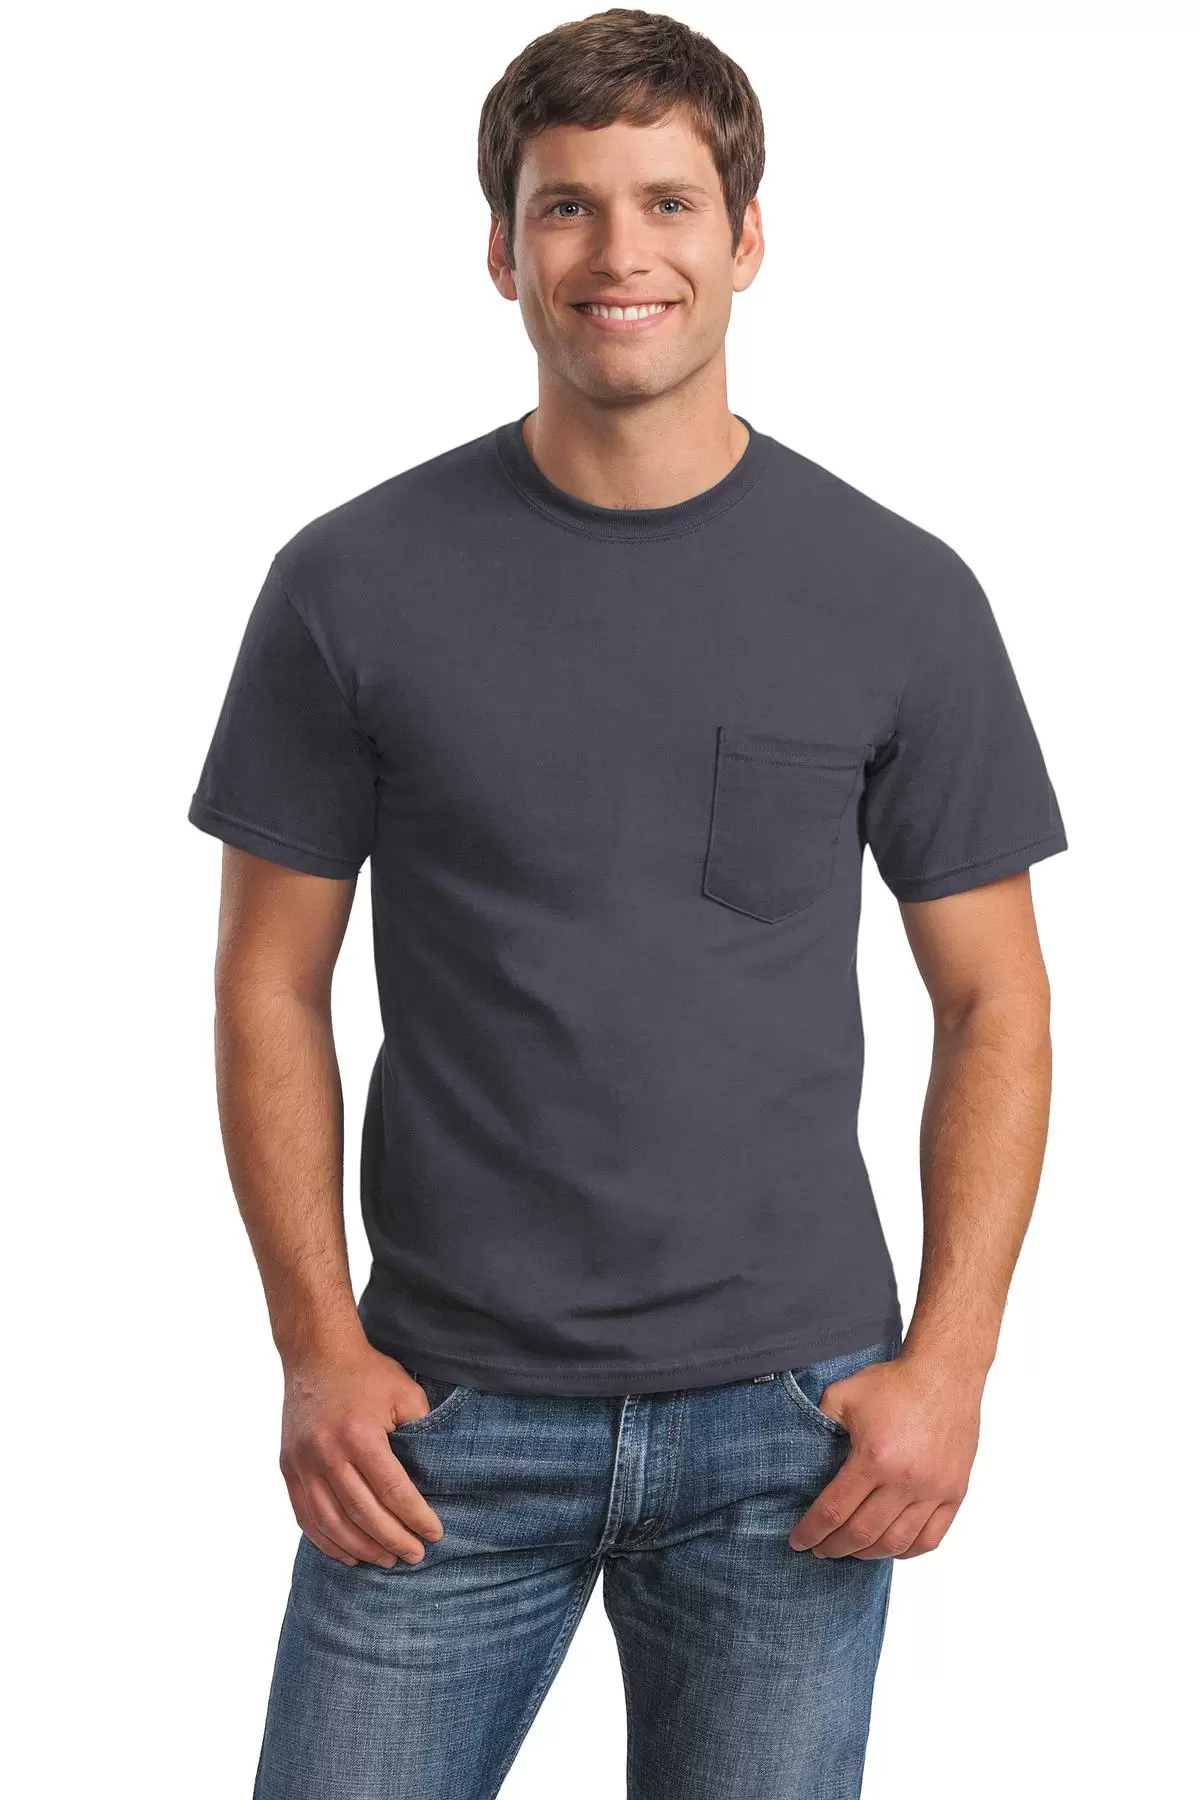 2300 Gildan Ultra Cotton Pocket T-shirt - From $5.57